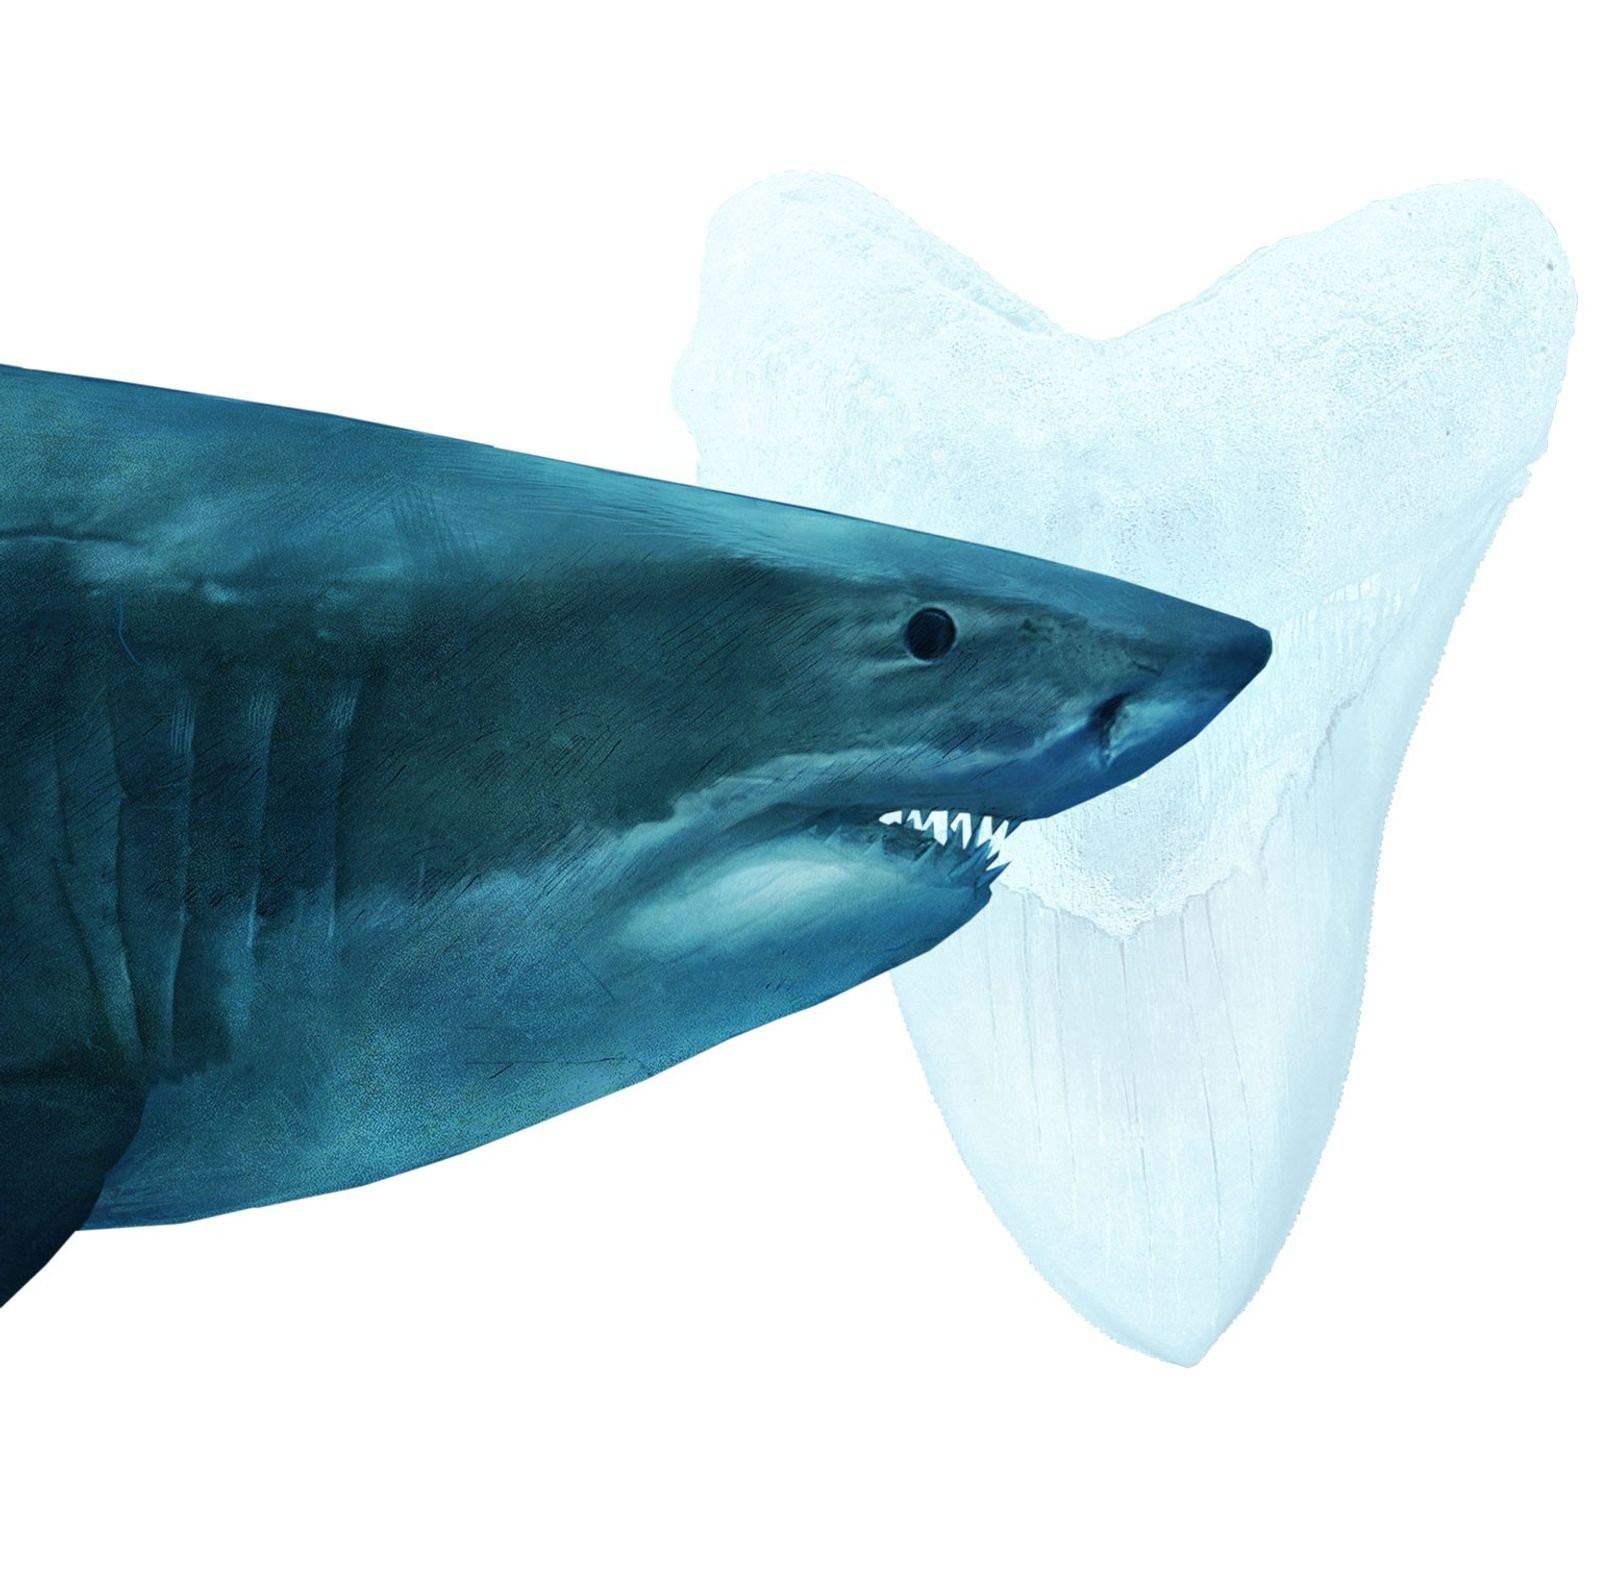 War der Weiße Hai schuld am Aussterben von Megalodon?